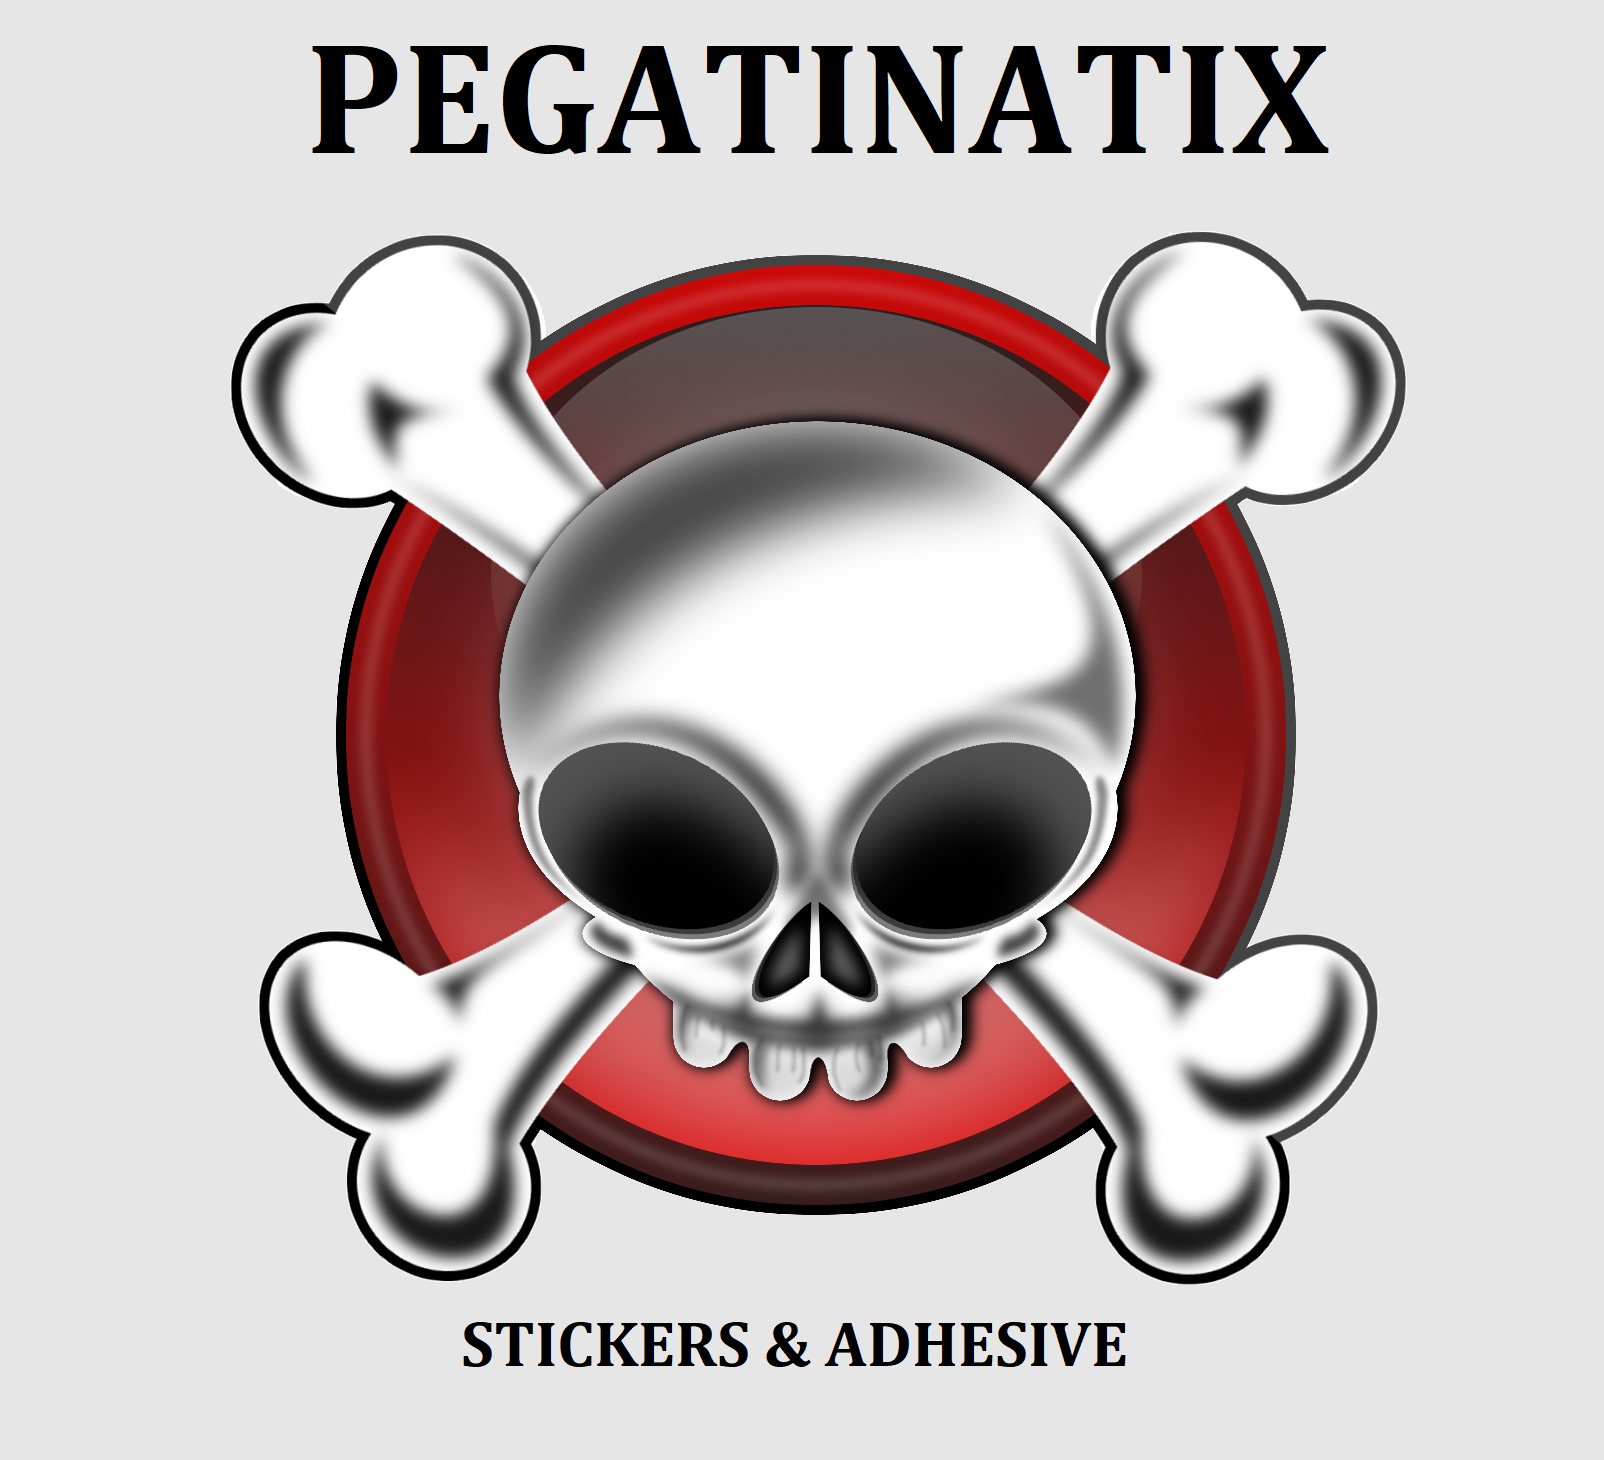 Pegatinatix